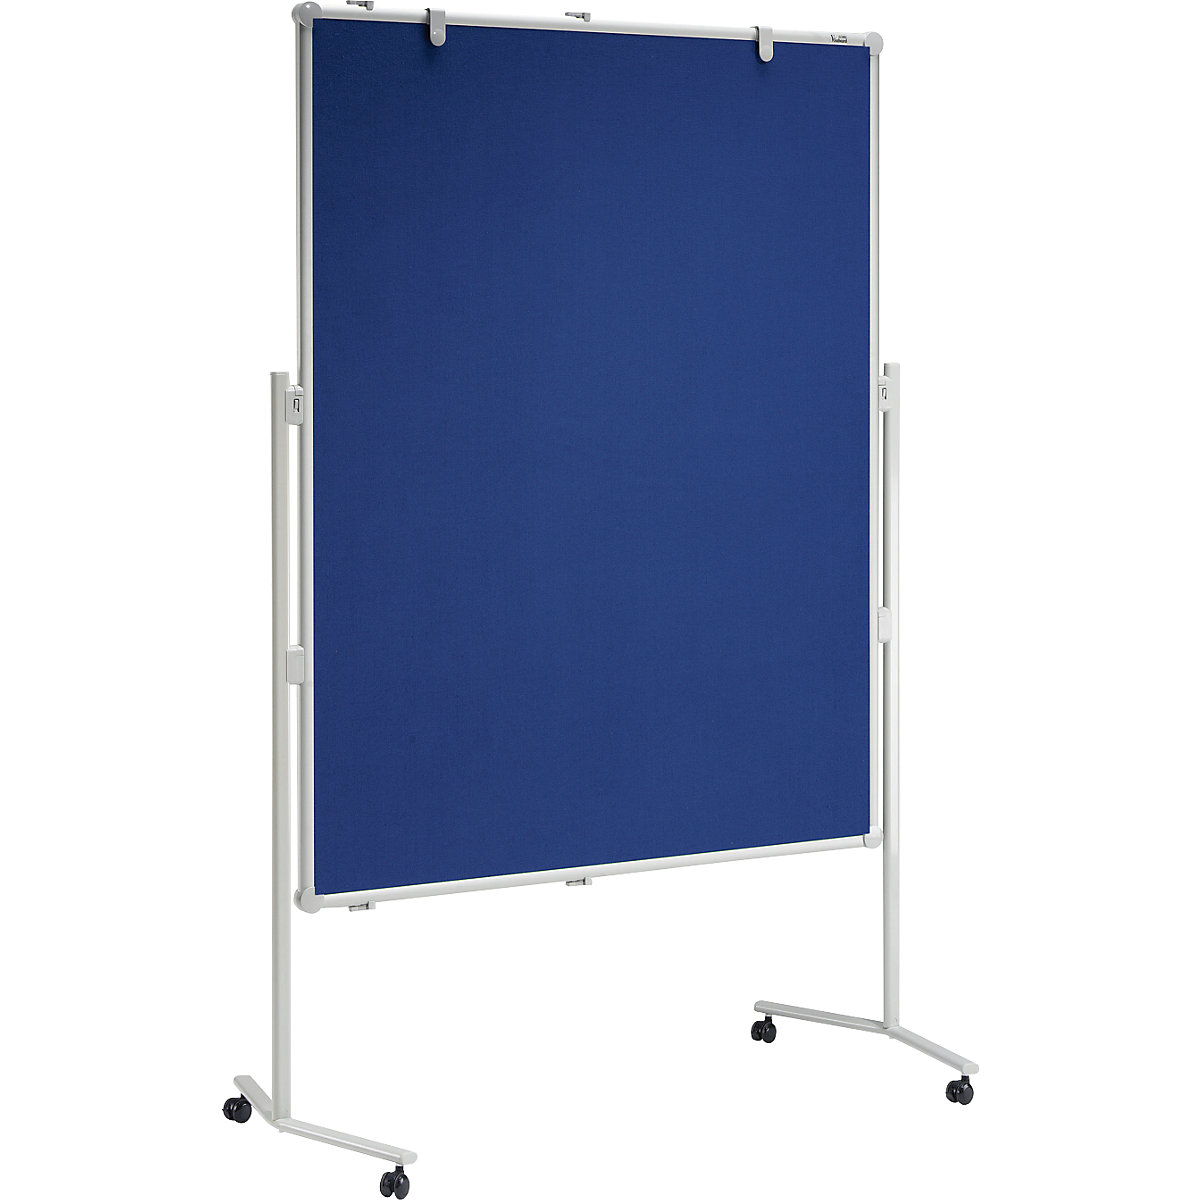 MAUL Moderationstafel PRO, Textil-Oberfläche, blau, BxH 1200 x 1500 mm